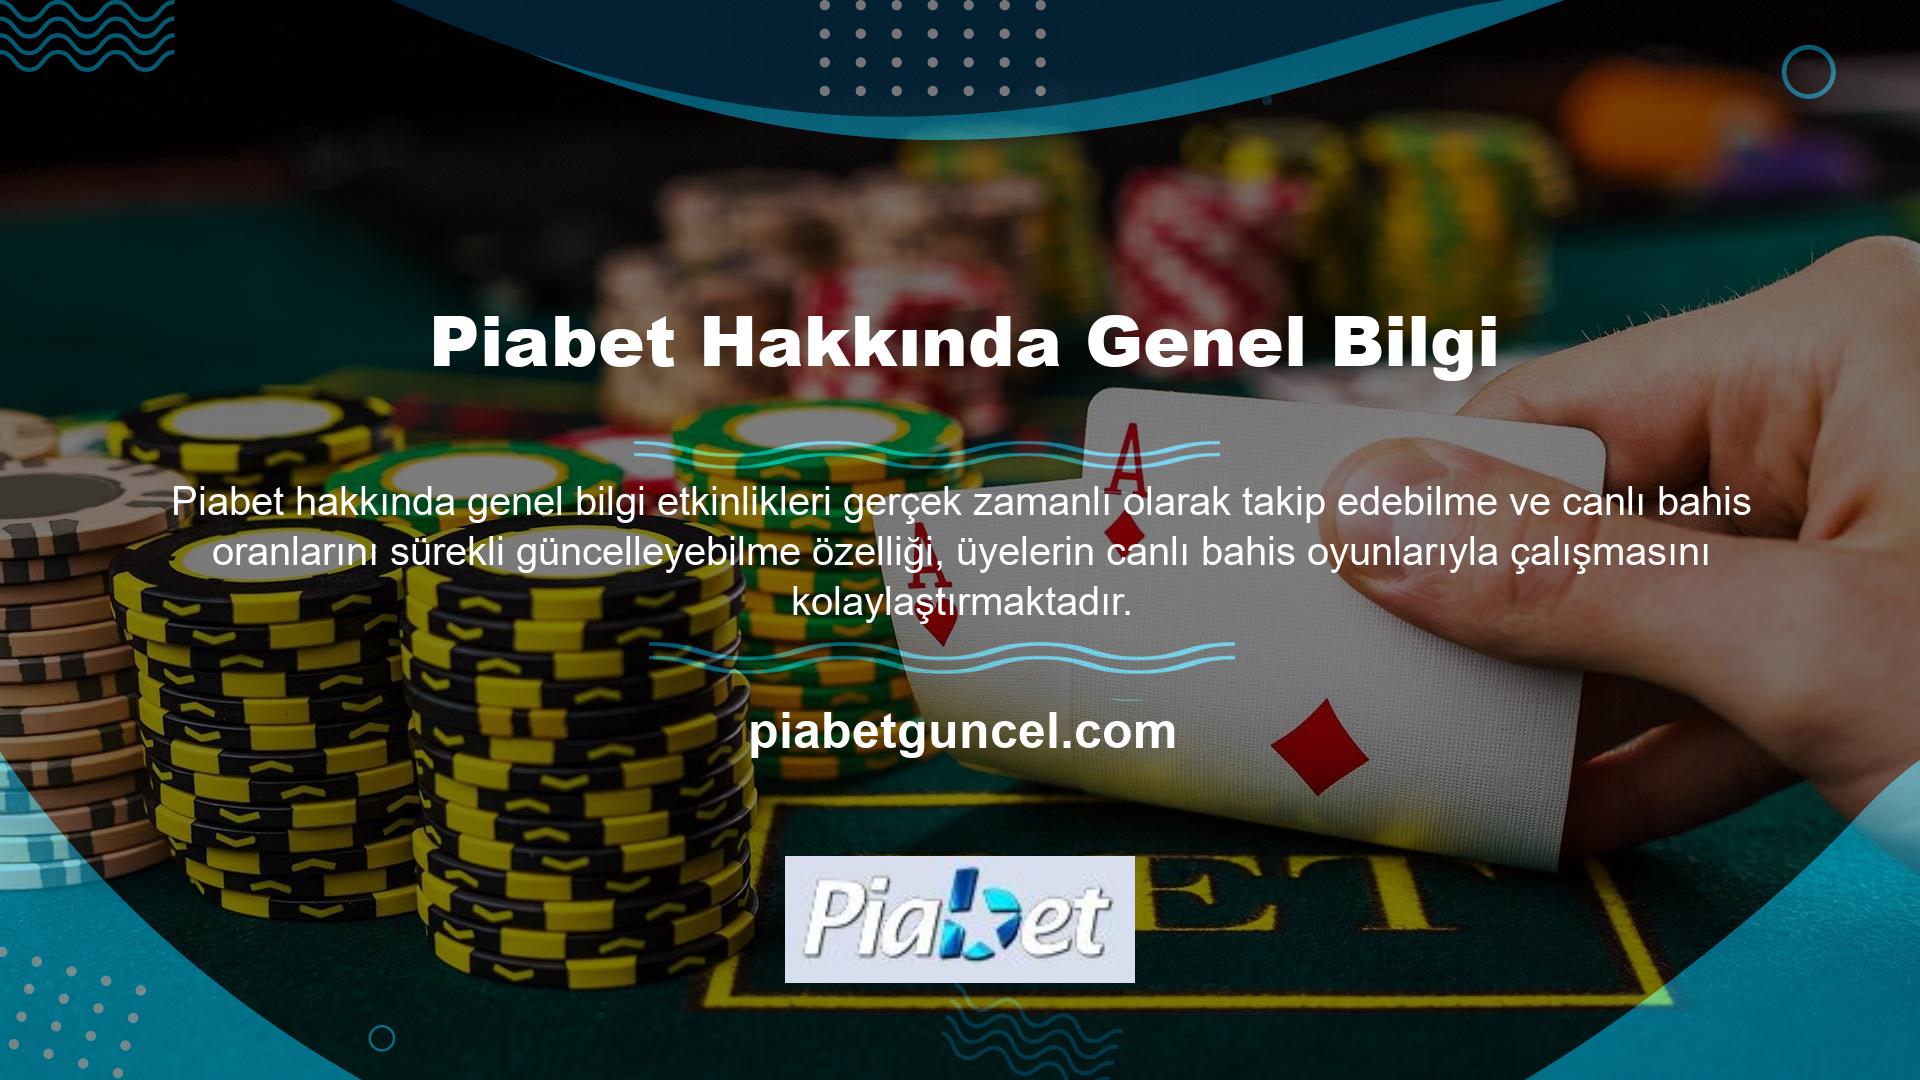 Piabet Bahis Çoğu bahisçi arama motoru bahis sitelerine soruyor Piabet dolandırıcı mı? Türkiye'nin en popüler casino sitesi hakkındaki sorunun cevabını ele alalım